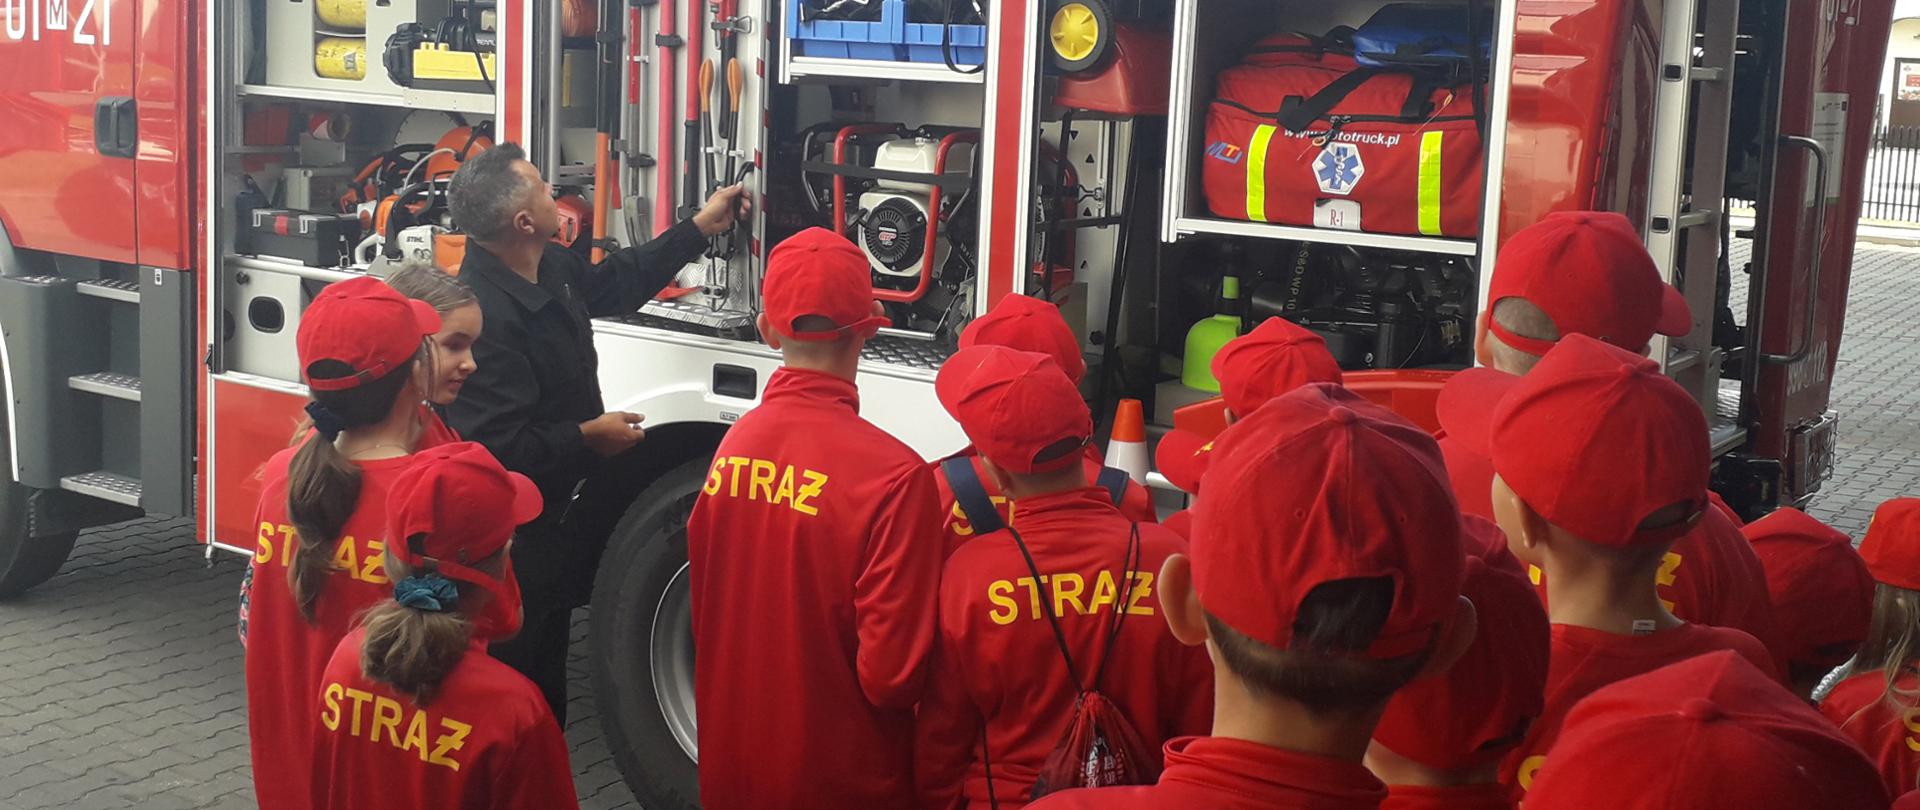 Pokaz sprzętu, młodzieżowa drużyna obserwuje strażaka pokazującego sprzęt na samochodzie